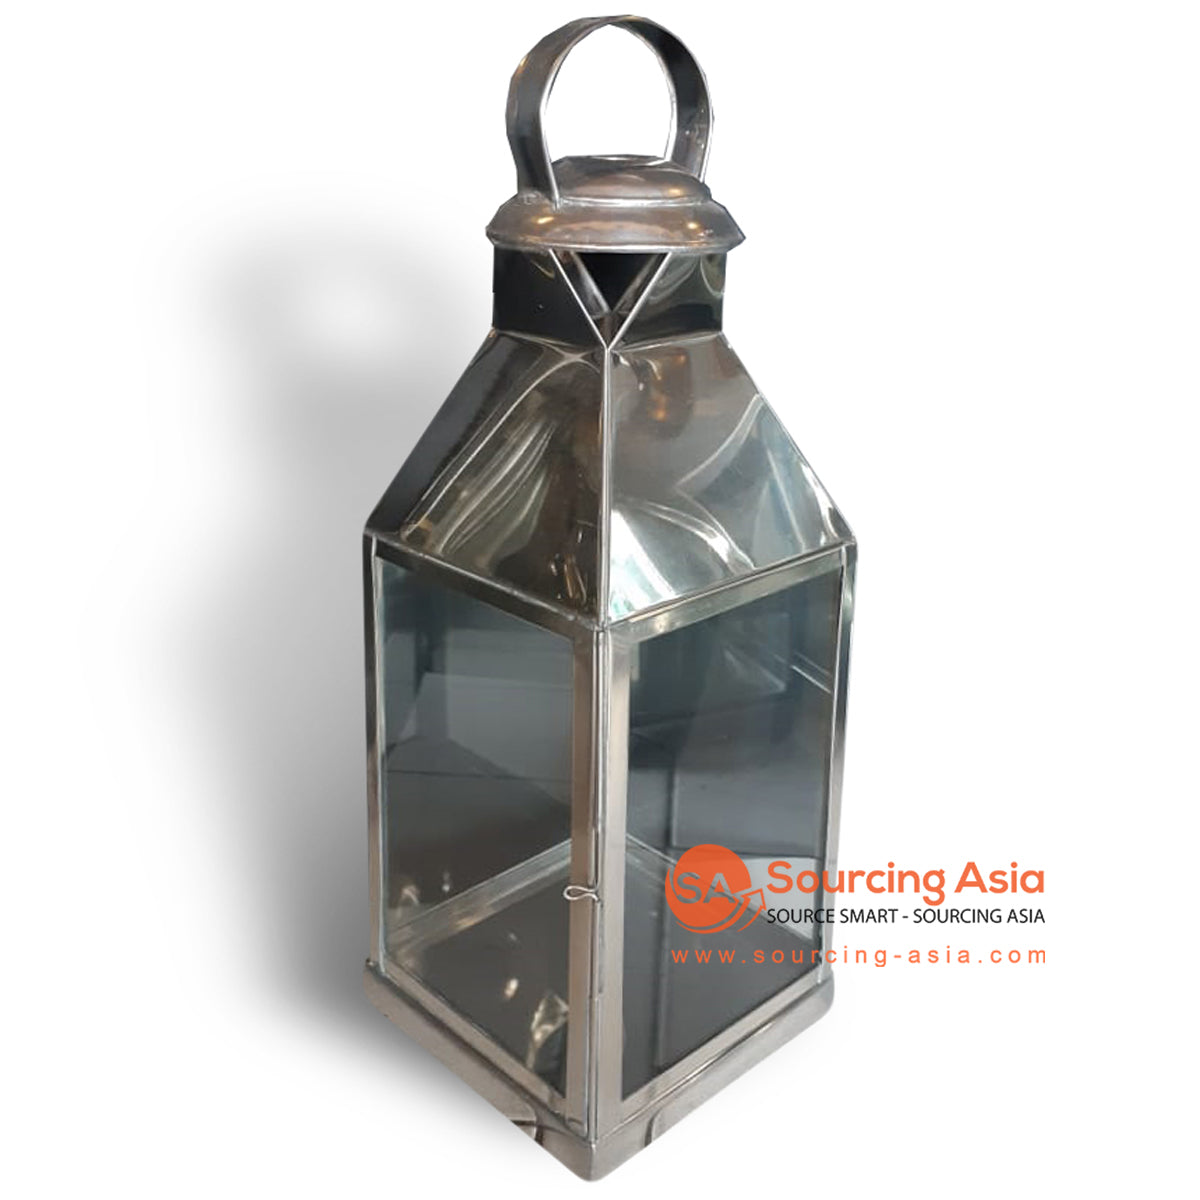 ODE036A-4 BLACK COPPER CLASSIC LANTERN LAMP HOLDER